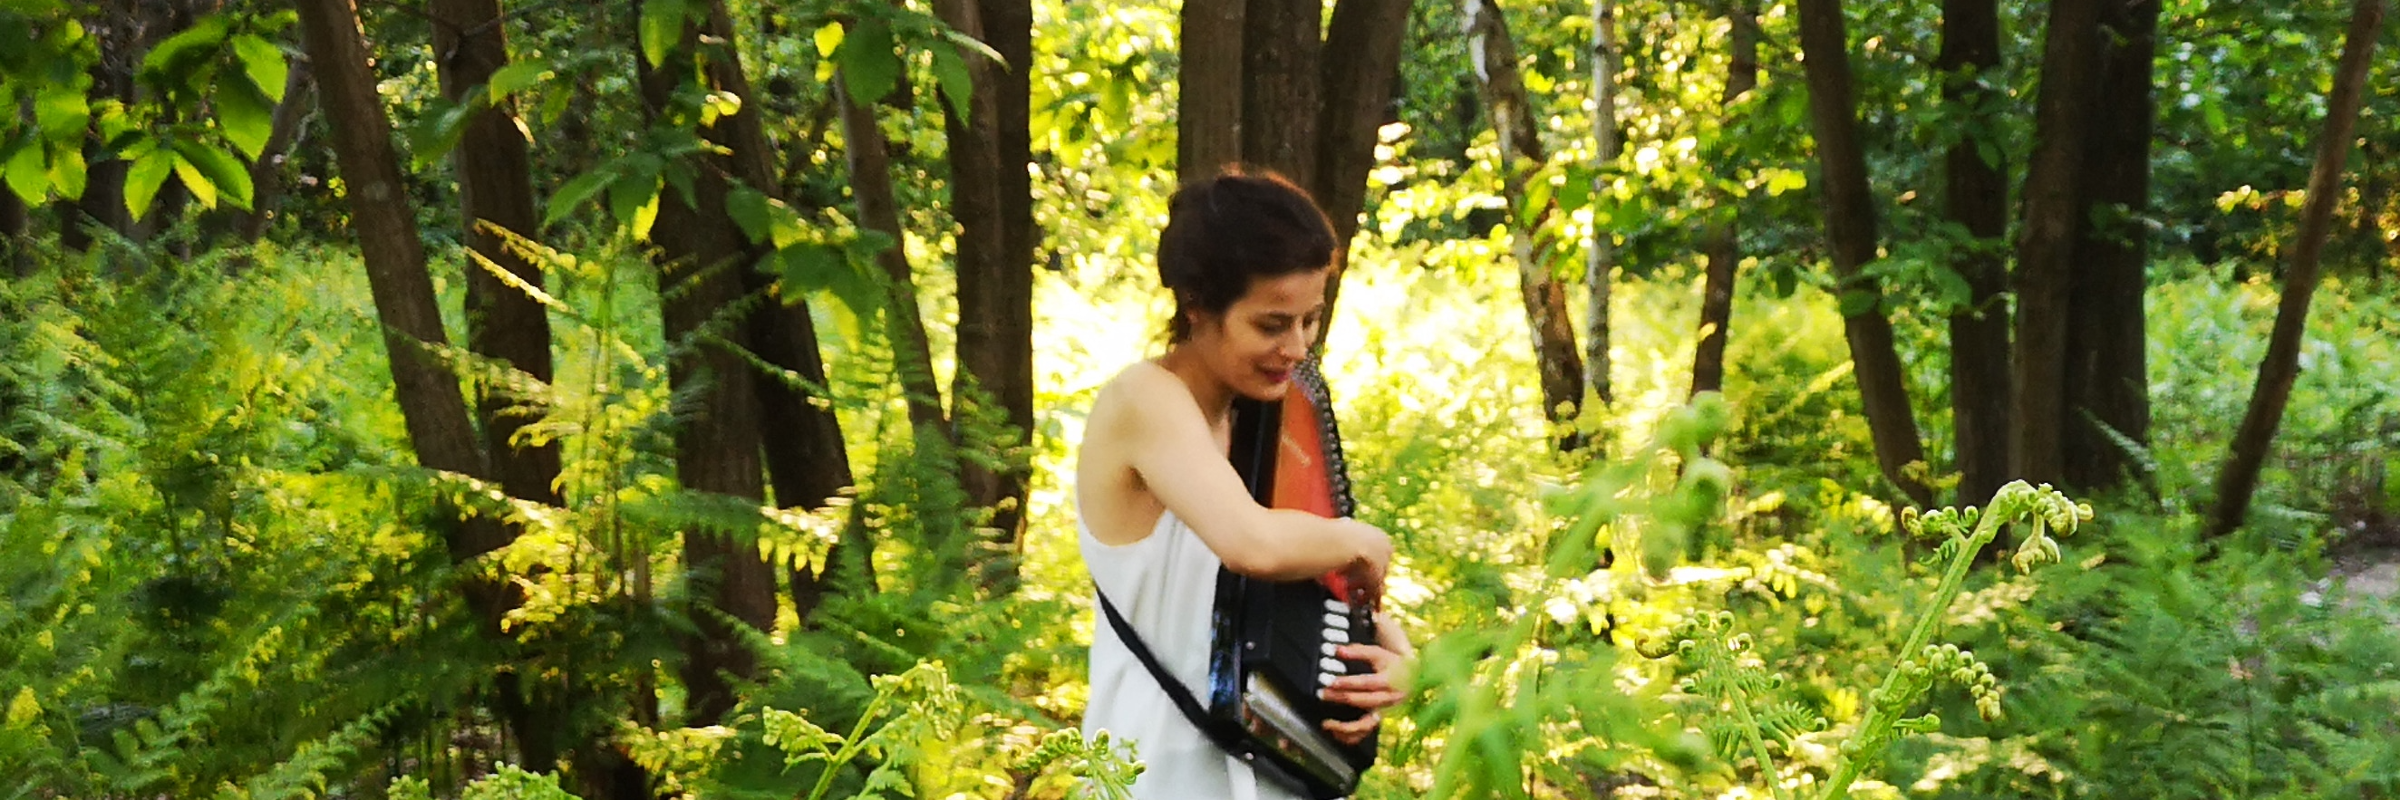 Angèle S. , musicien Chanteur en représentation à Loire Atlantique - photo de couverture